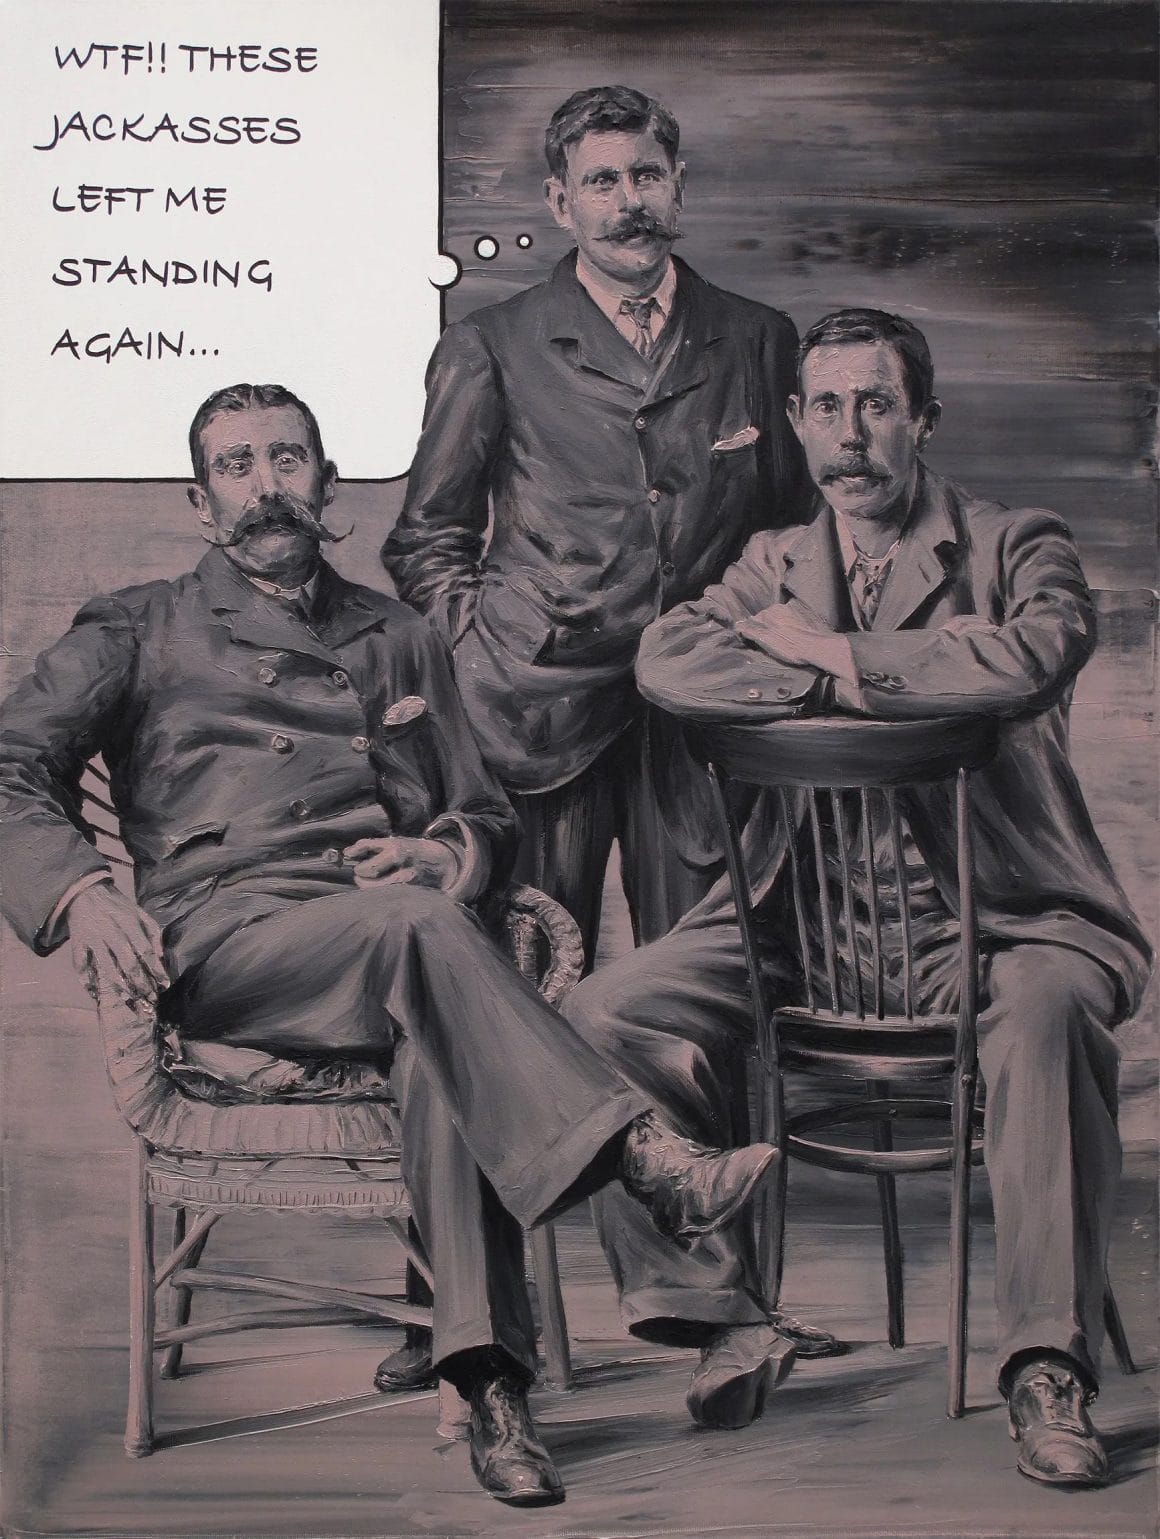 Portrait de trois hommes. Deux sont assis, et le troisième, debout, semble dire "WTF!! These jackasses left me standing again..."